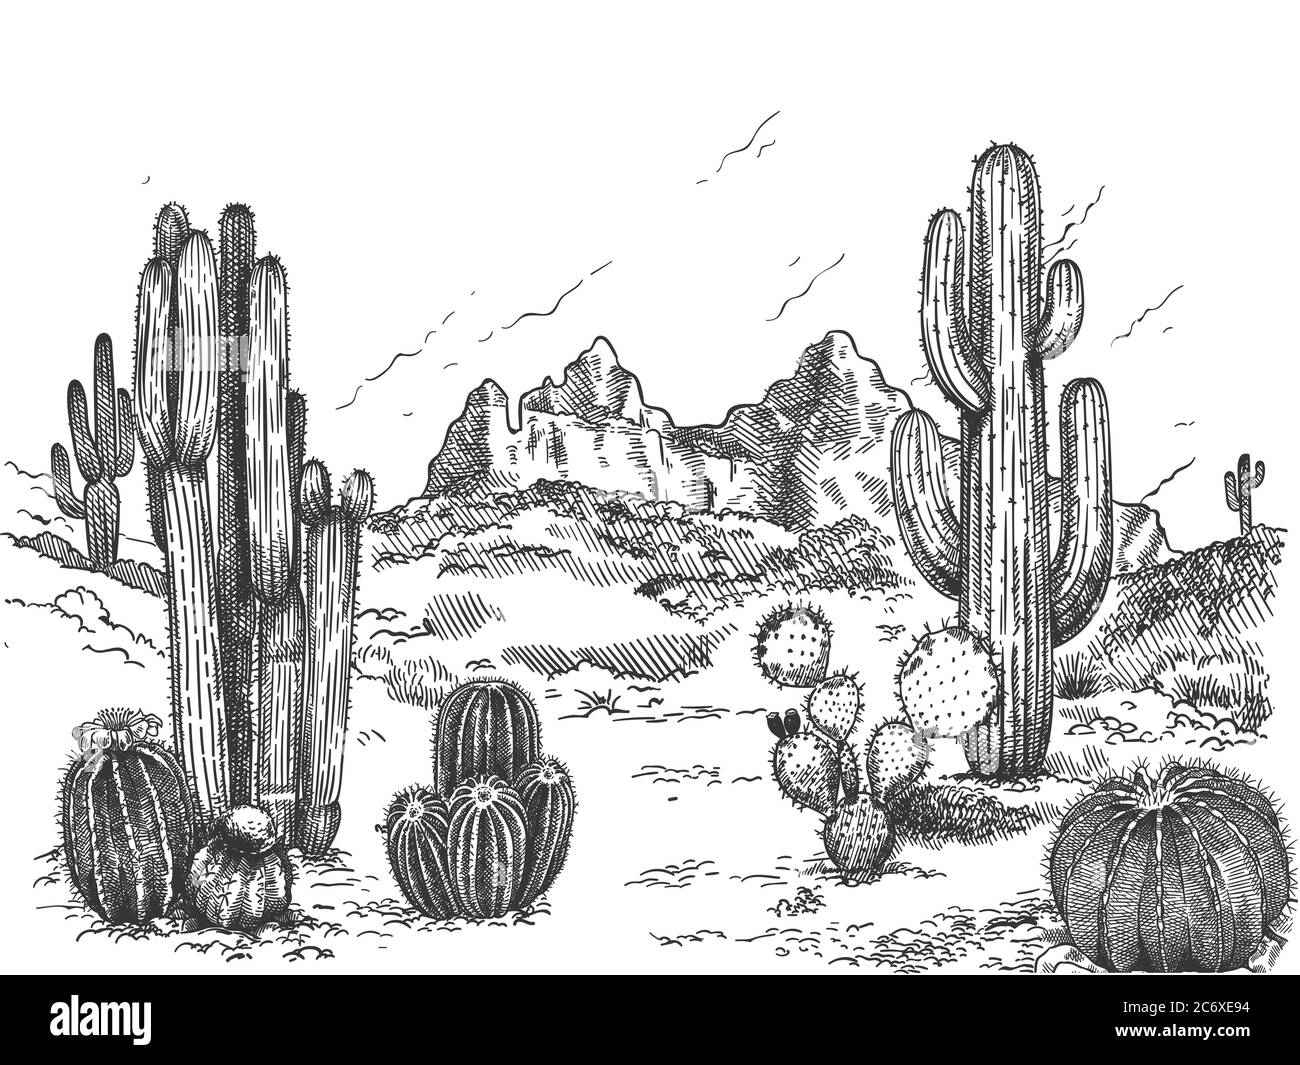 Paisaje desértico. Pradera mexicana dibujada a mano con plantas y cactú en flor, suculentas naturaleza salvaje oeste bosquejo fondo vector Ilustración del Vector